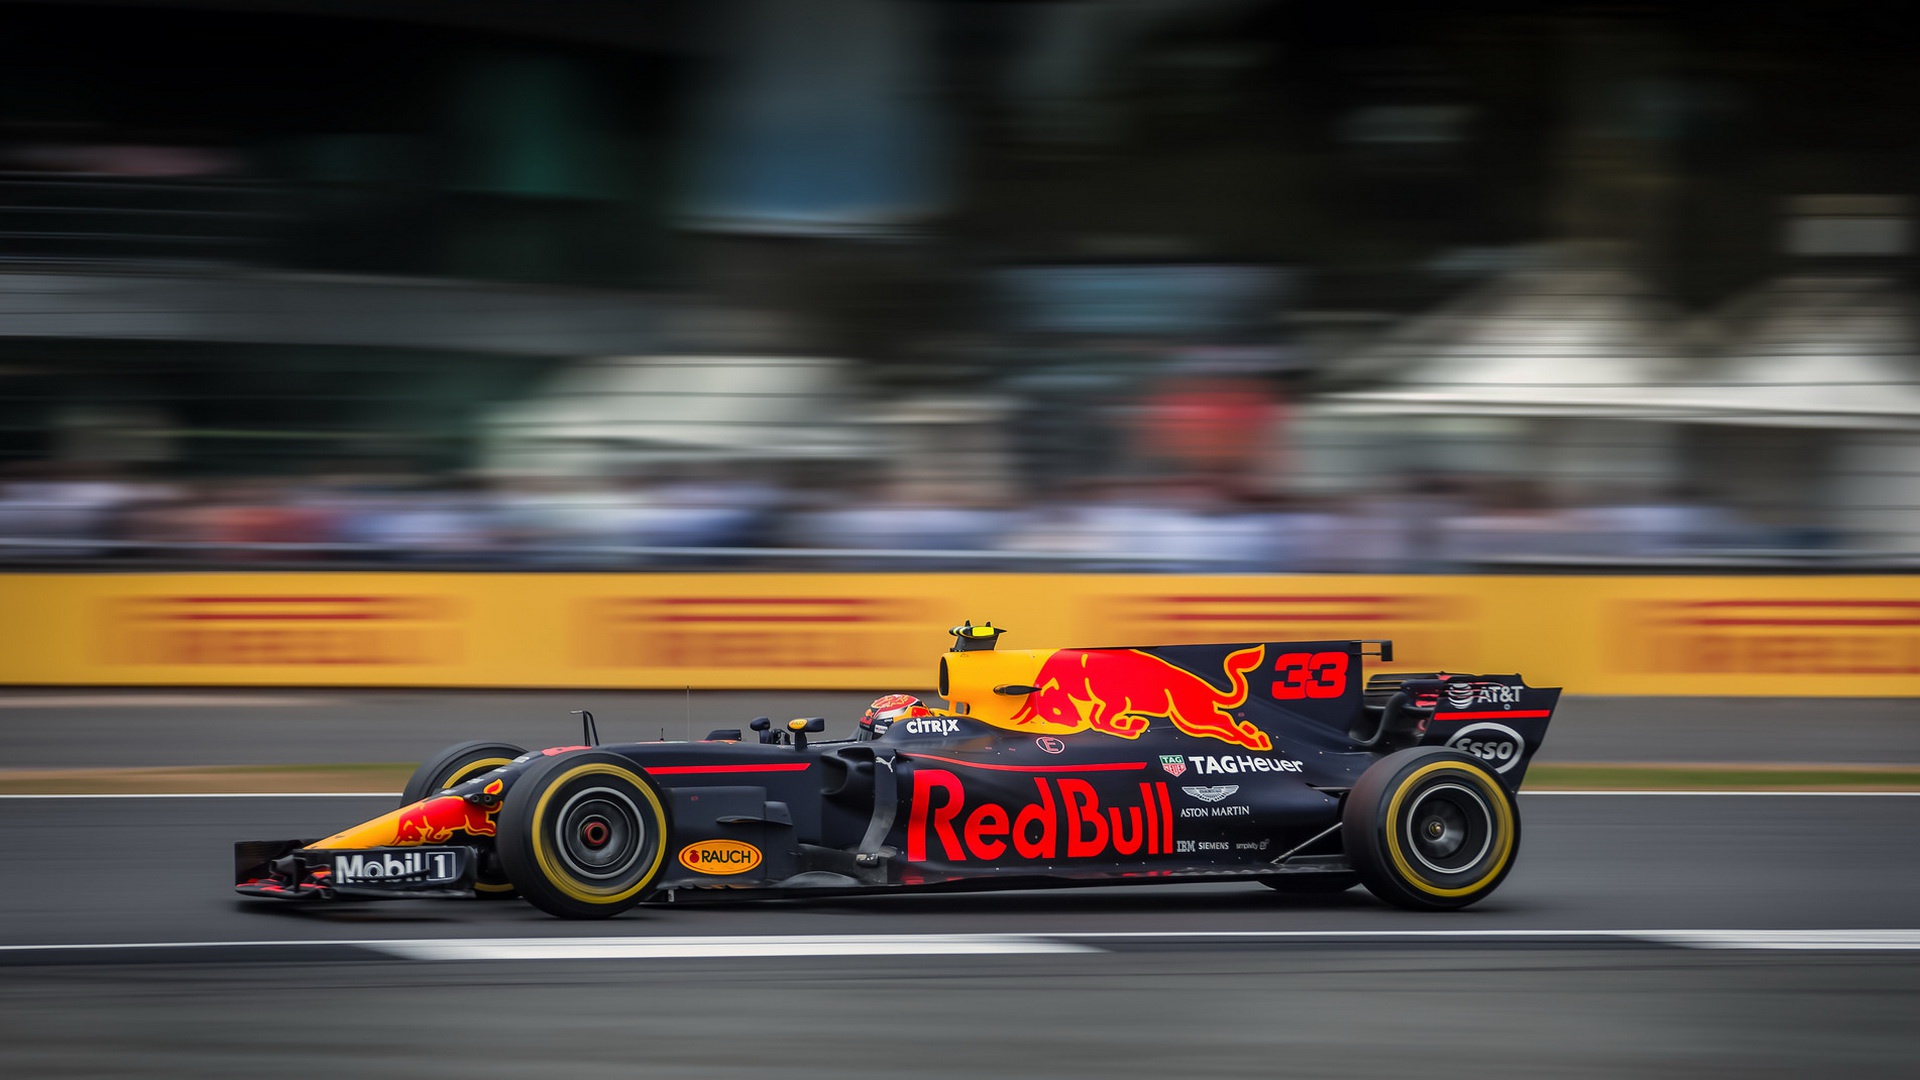 F1 Max Verstappen Wallpaper 5k - HD Wallpaper 